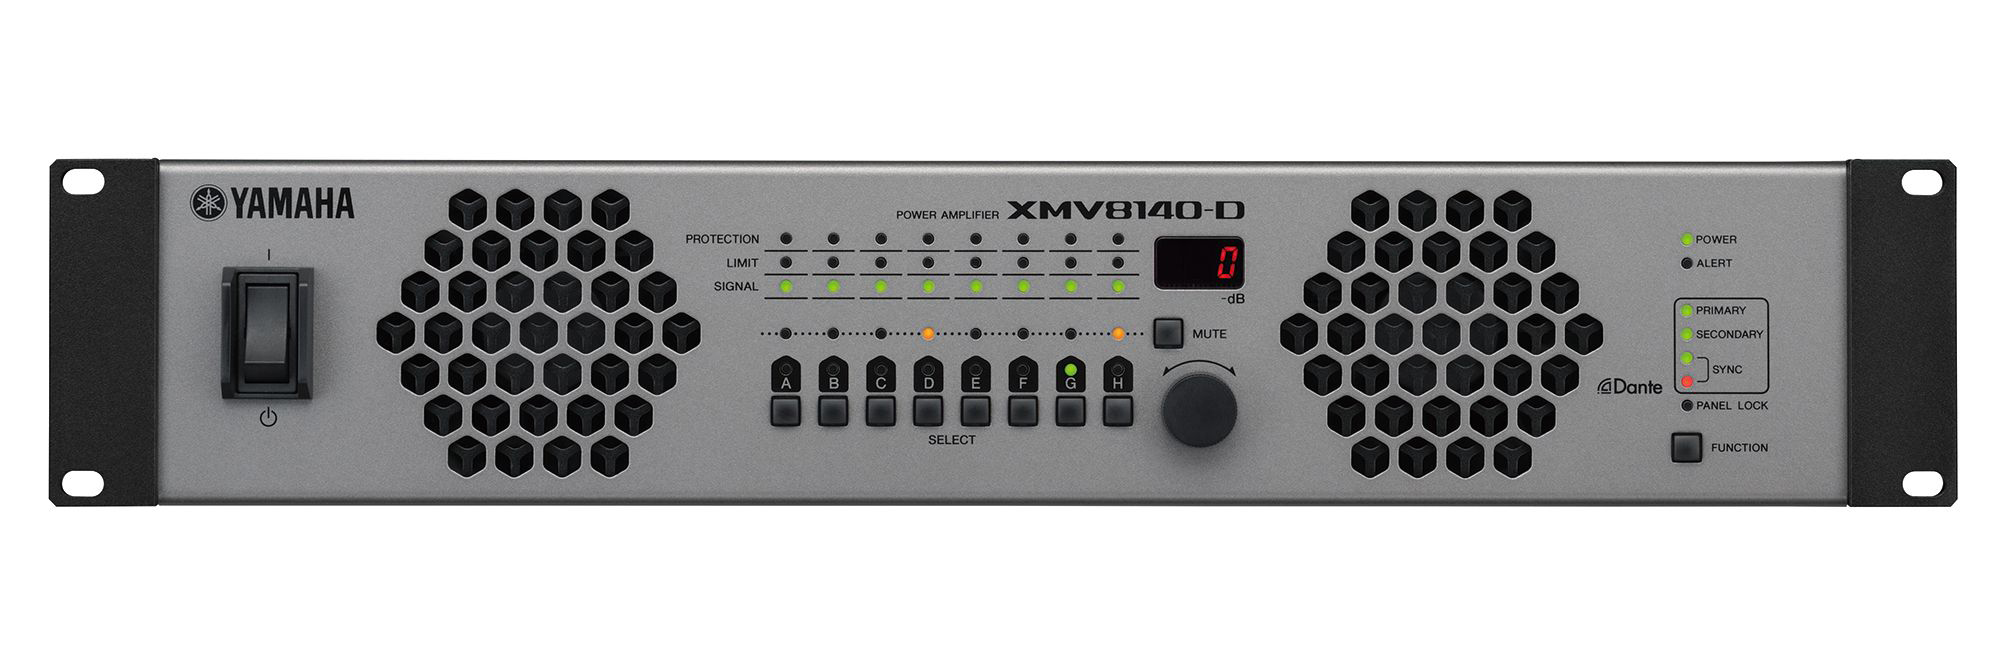 Ampli công suất Yamaha XMV8140-D